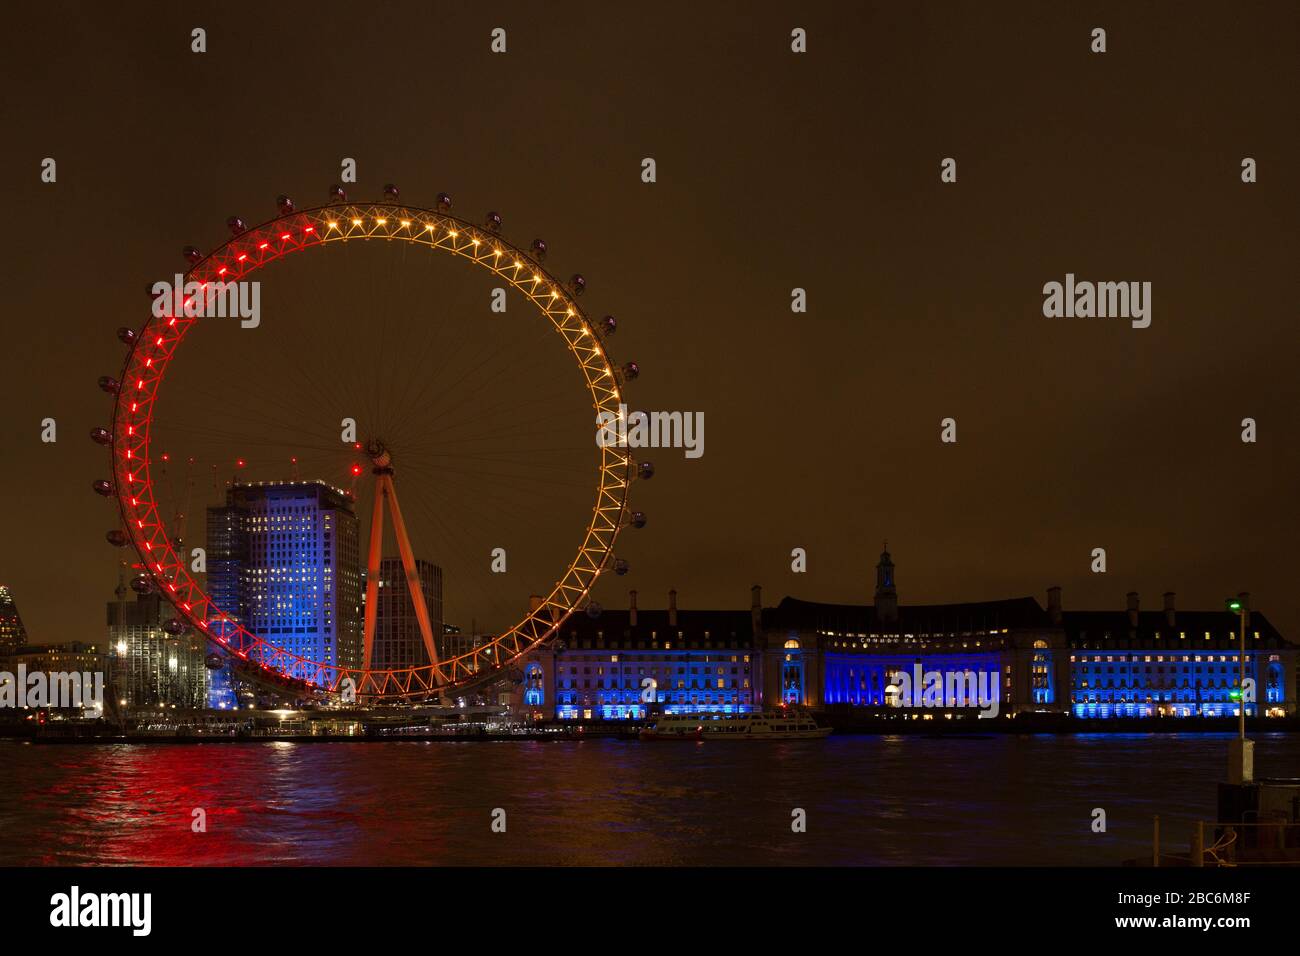 The London Eye, Millennium Eye la nuit devant County Hall. Illuminé dans le cadre de l'exposition d'art Lumiere London. Banque D'Images